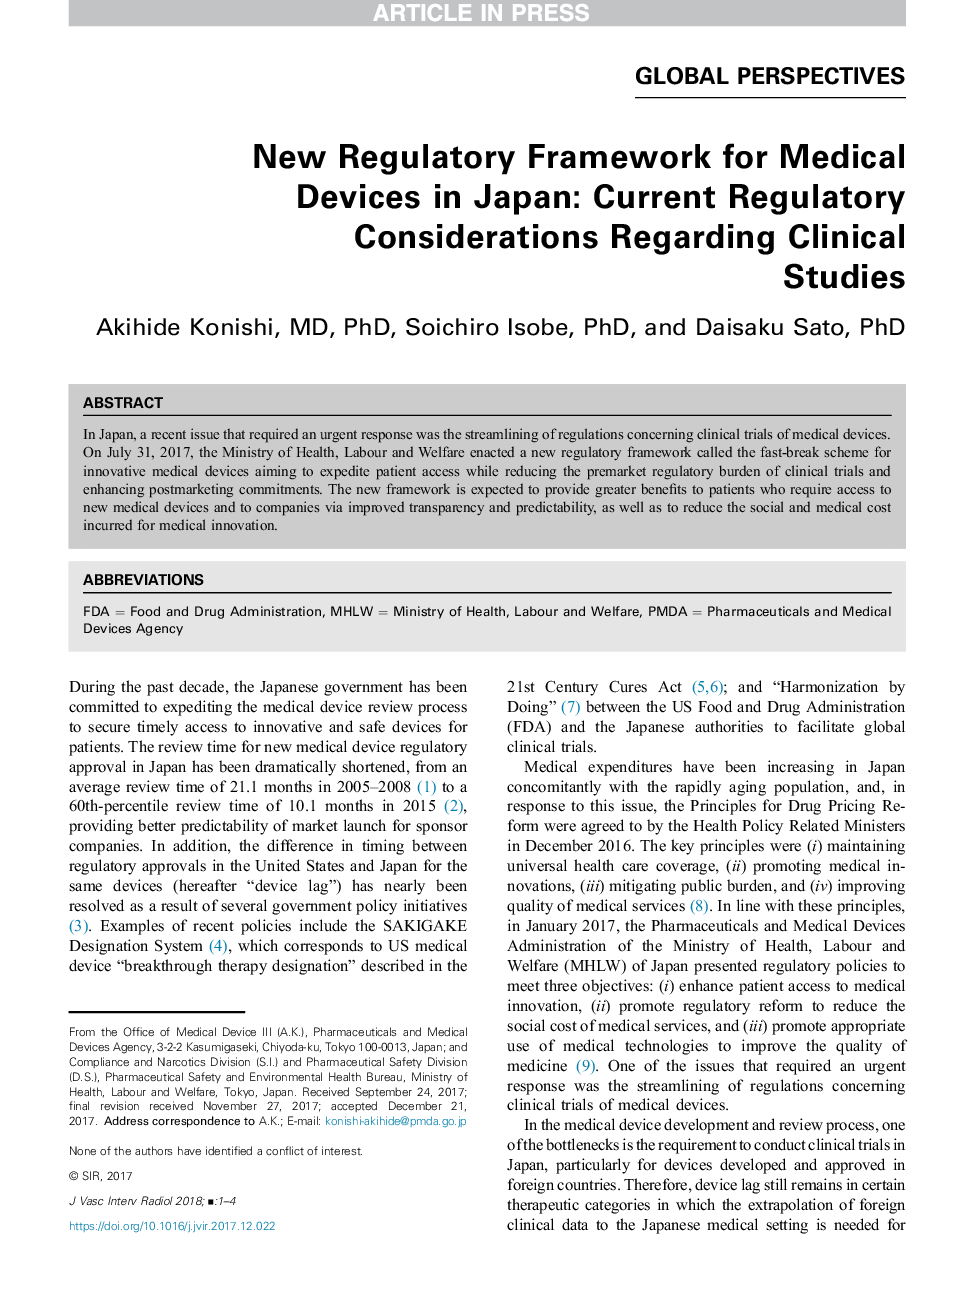 چارچوب نظارتی جدید برای دستگاه های پزشکی در ژاپن: ملاحظات فعلی نظارتی در مورد مطالعات بالینی 